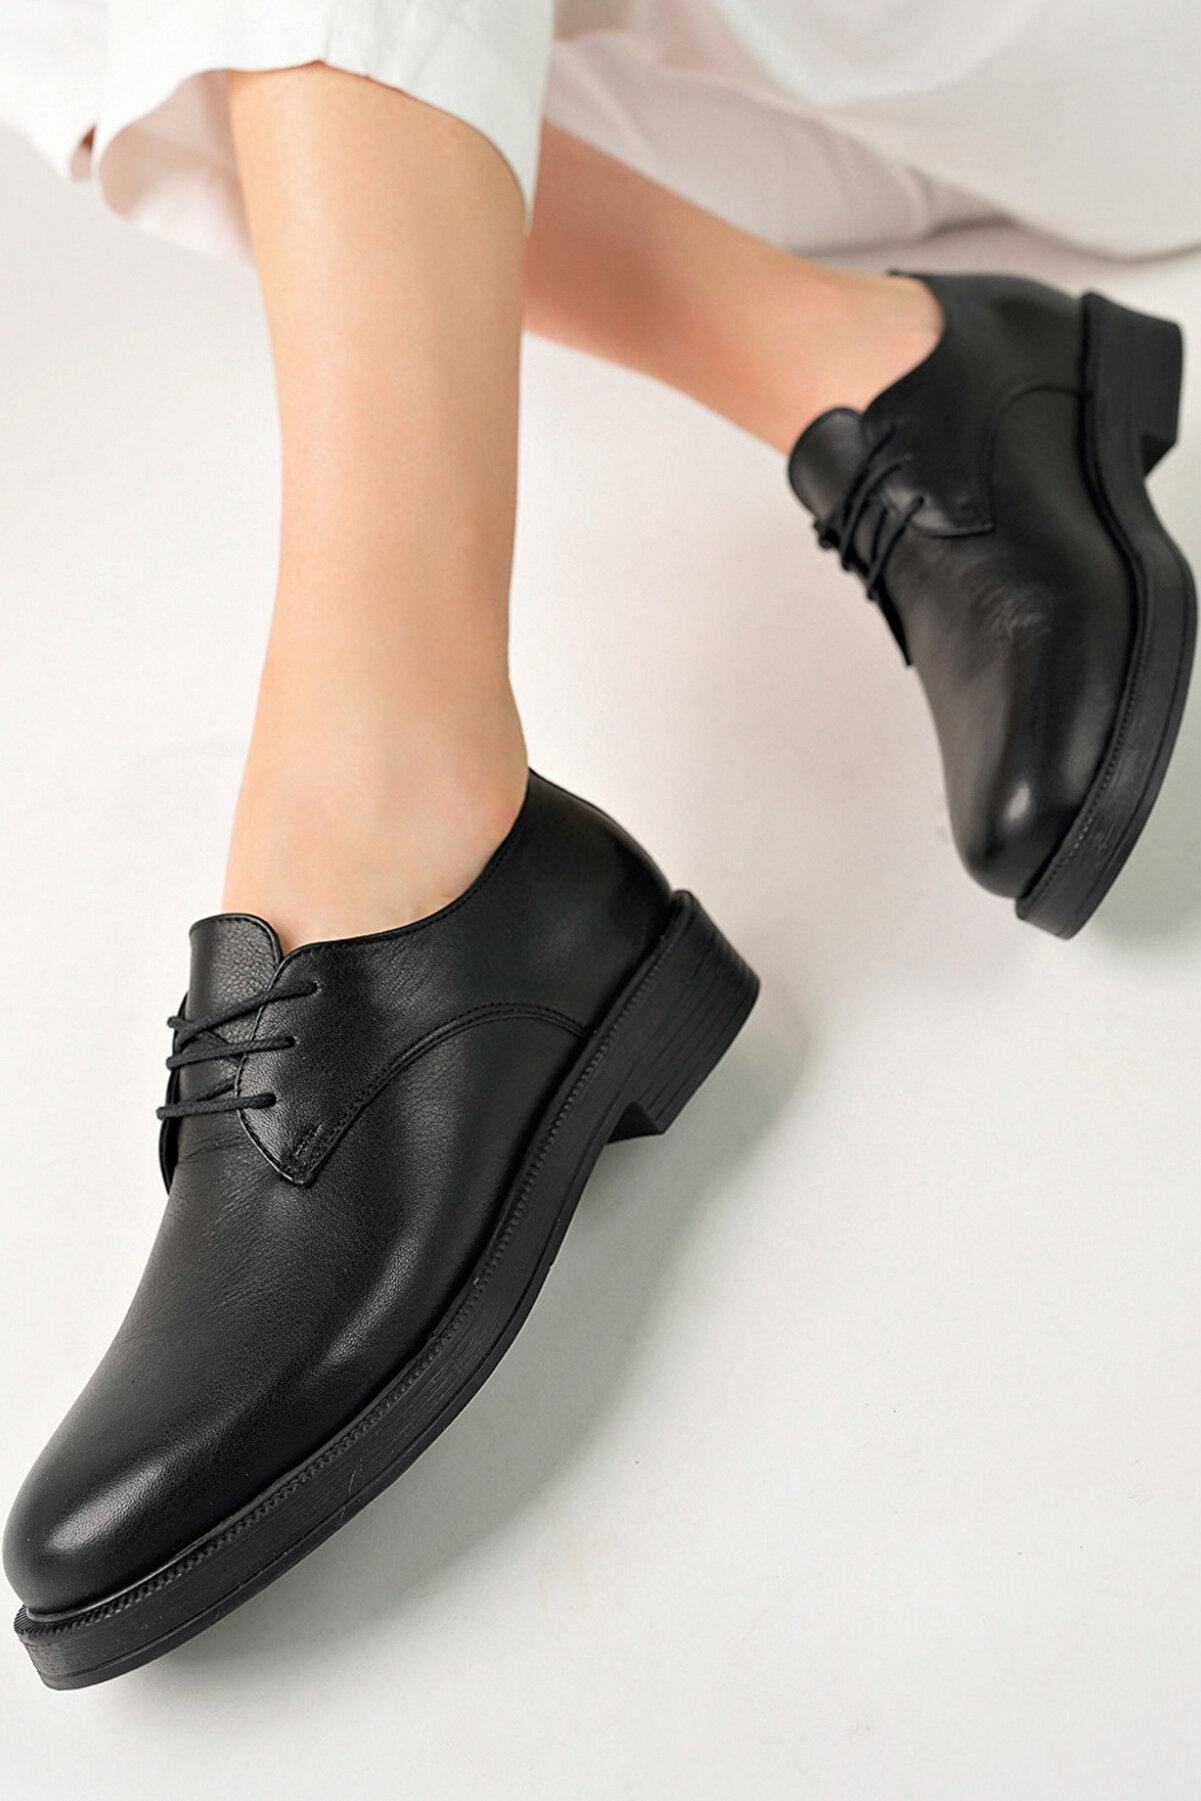 GRADA Hakiki Deri Kadın Oxford Ayakkabı Siyah Oxford Bağcıklı Kadın Casual Ayakkabı Kolej Ayakkabısı